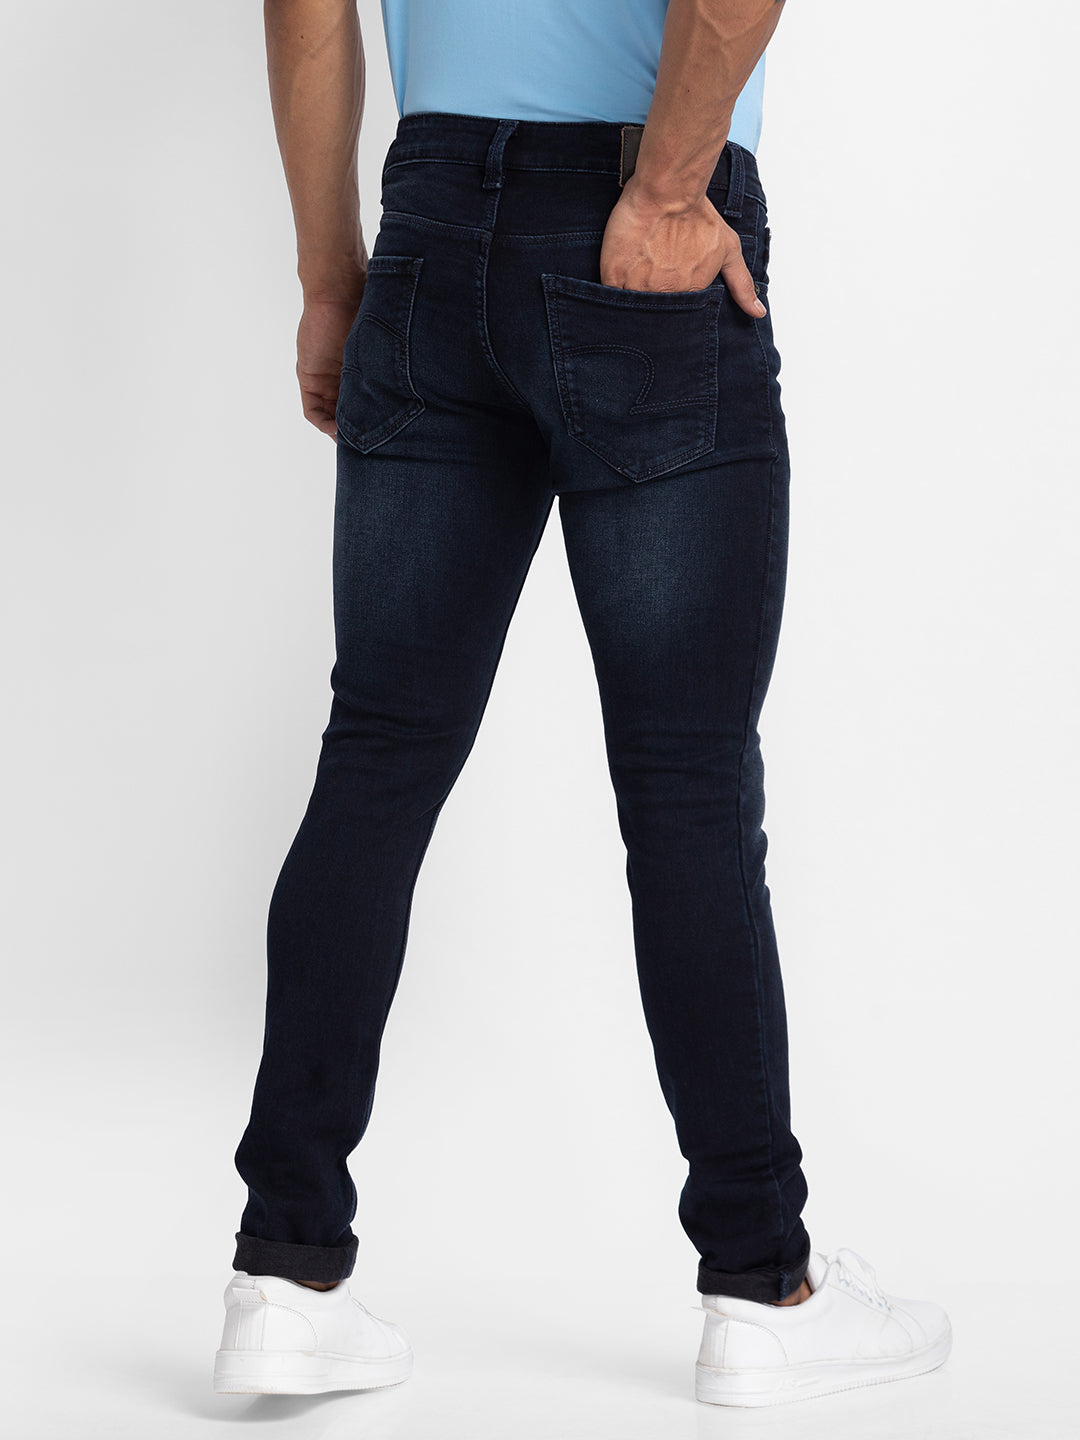 Spykar Blue Indigo Cotton Slim Fit Narrow Length Jeans For Men (Skinny)